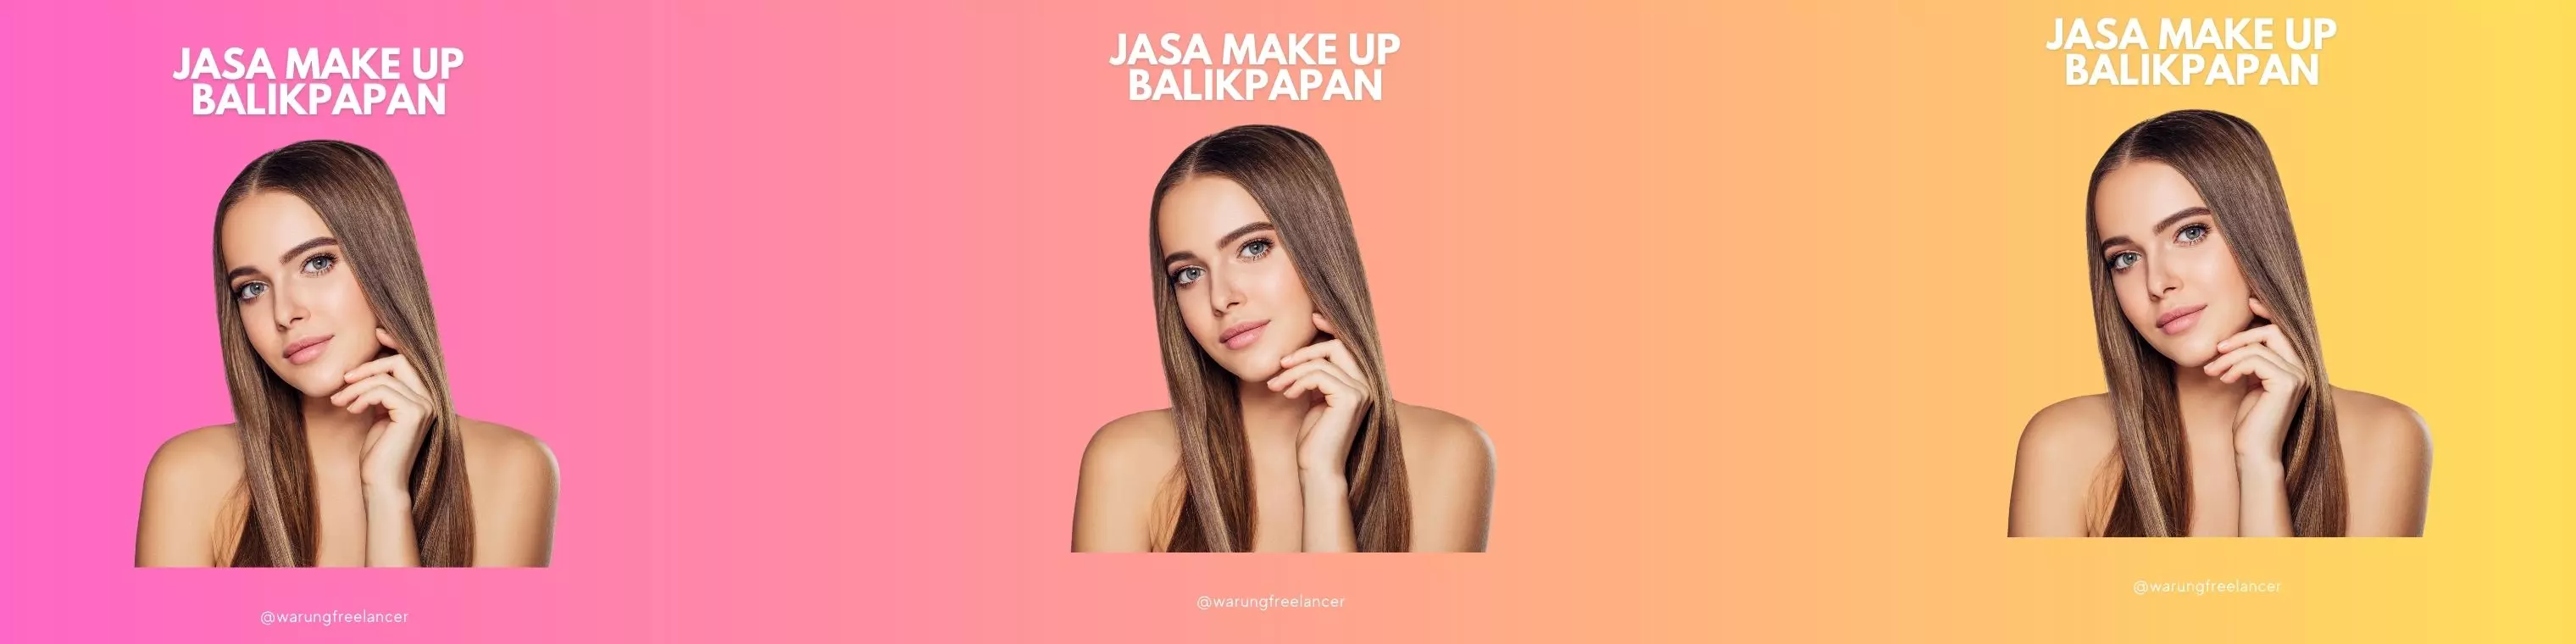 Jasa Make Up Balikpapan